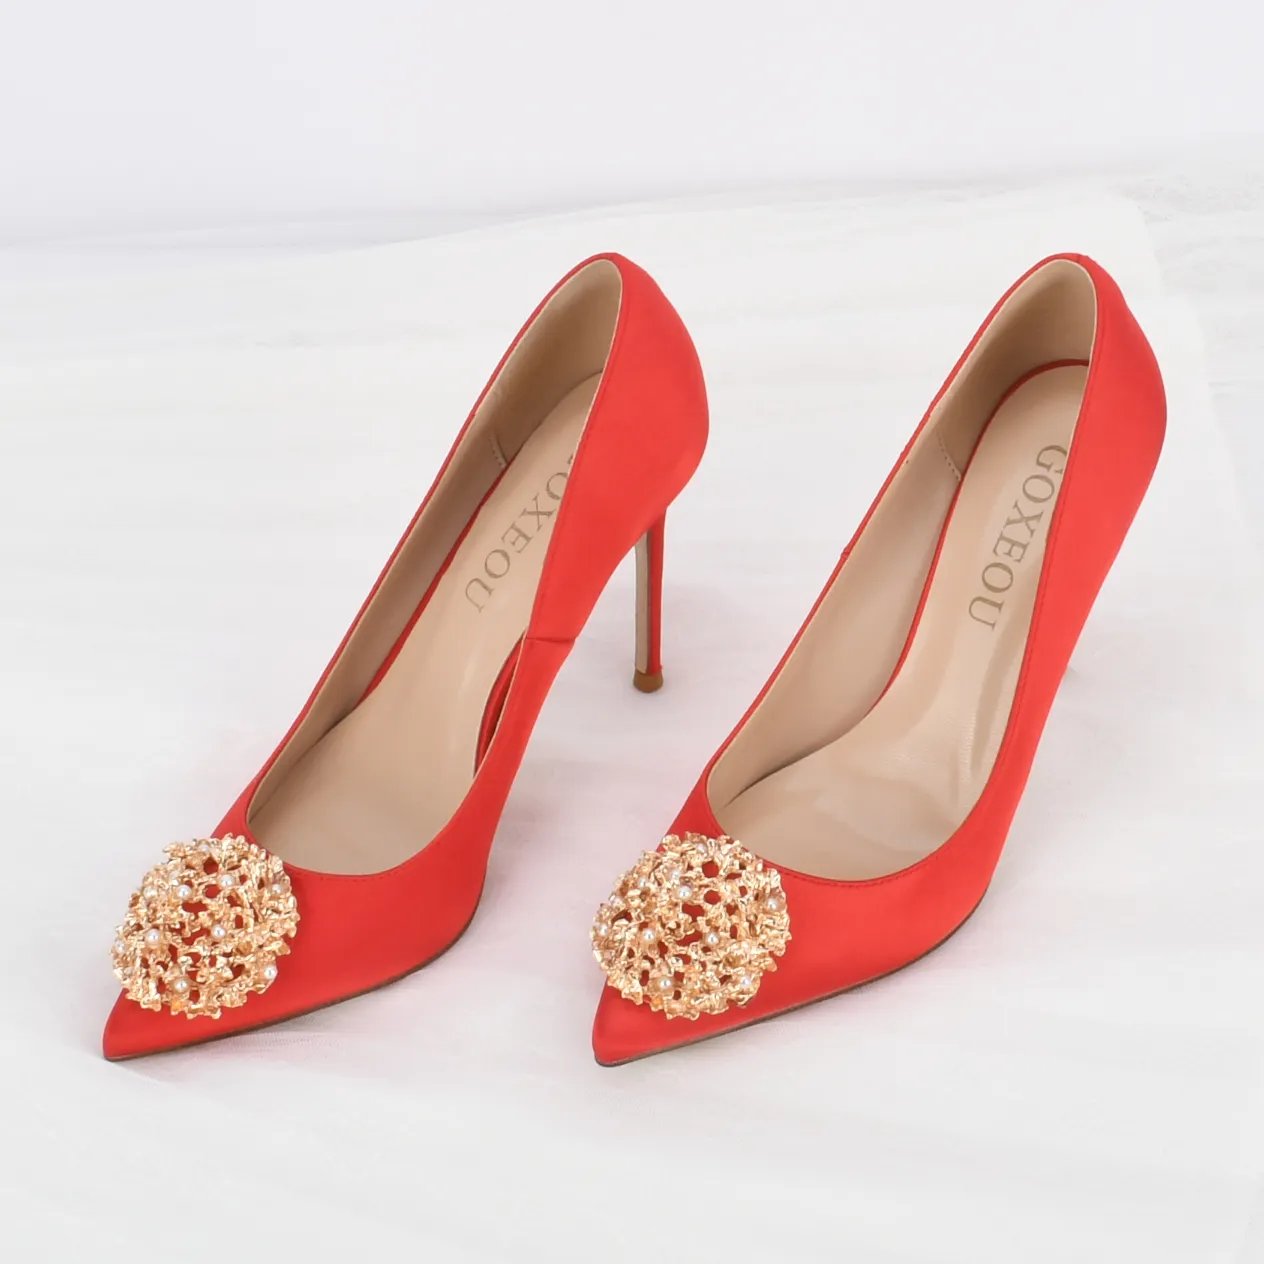 Goxeou Klasik Cina Menunjuk Toe Pernikahan Sepatu Fashion Satin Merah Seksi Wanita Hak Tinggi untuk Wanita Thin Heels untuk Pengantin pompa